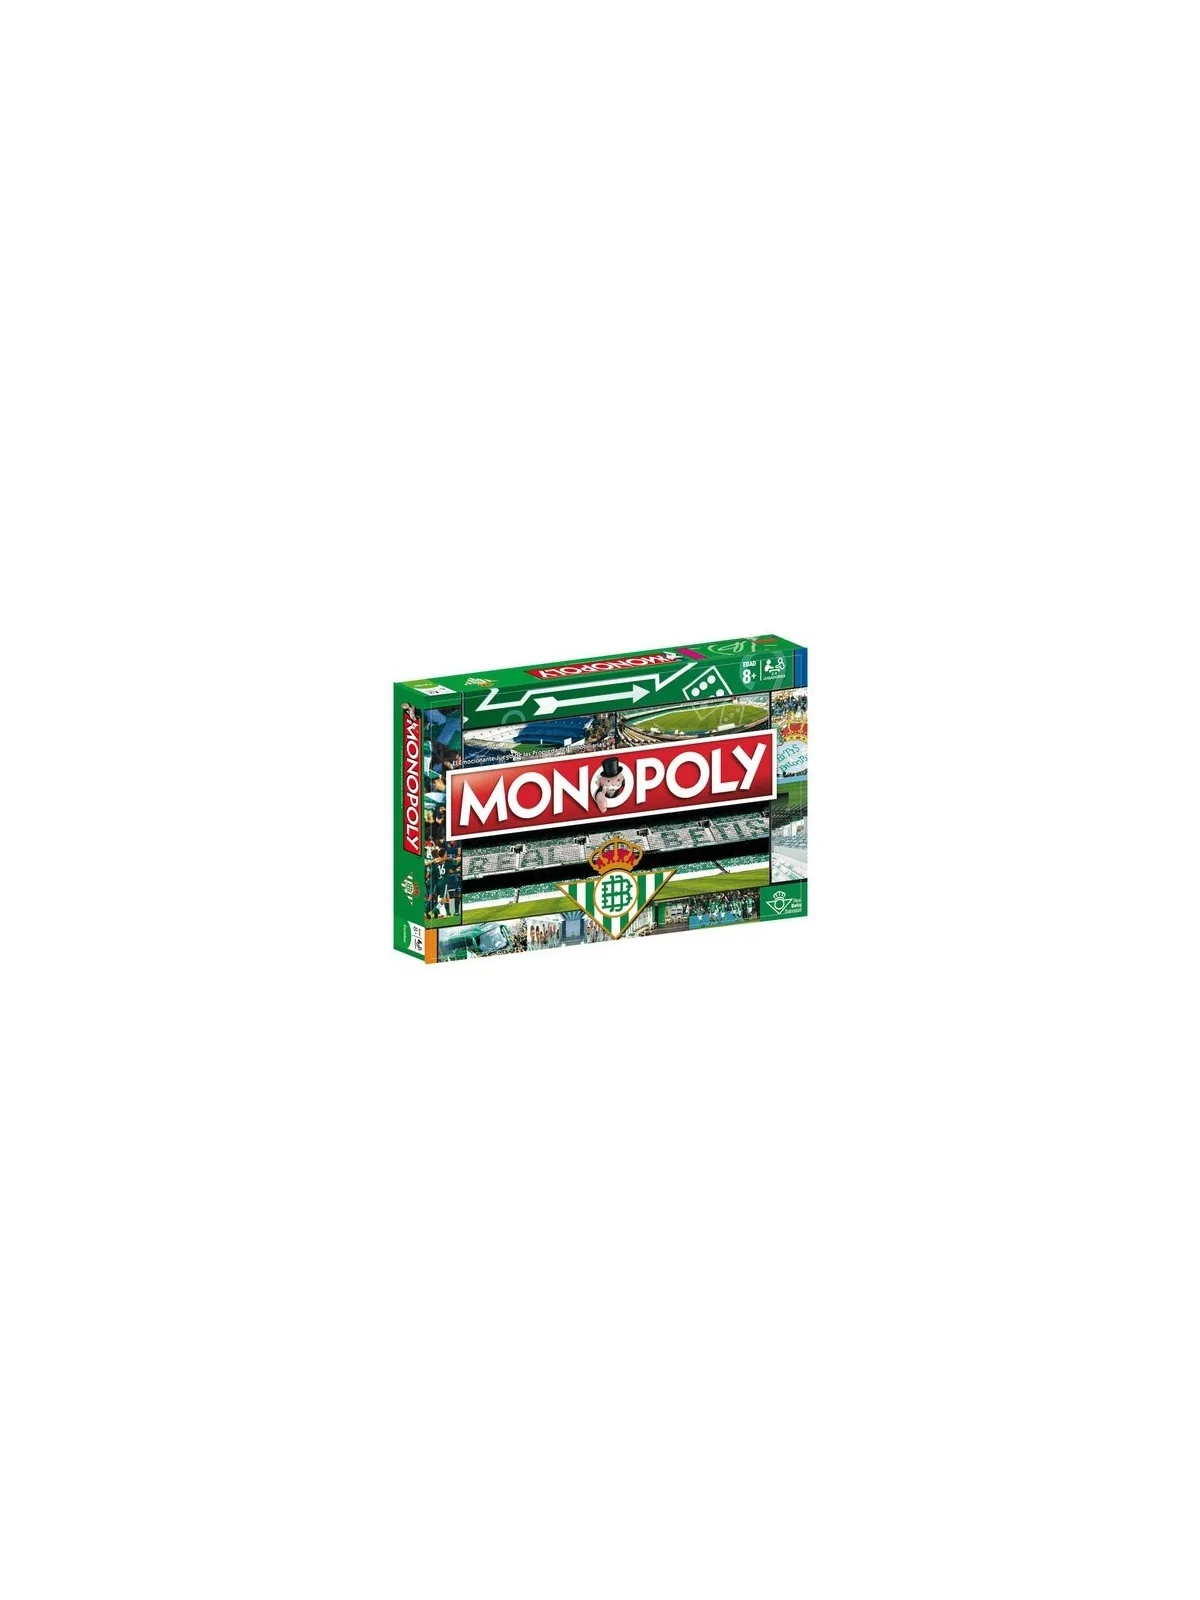 Comprar Monopoly: Real Betis Balompie barato al mejor precio 38,66 € d